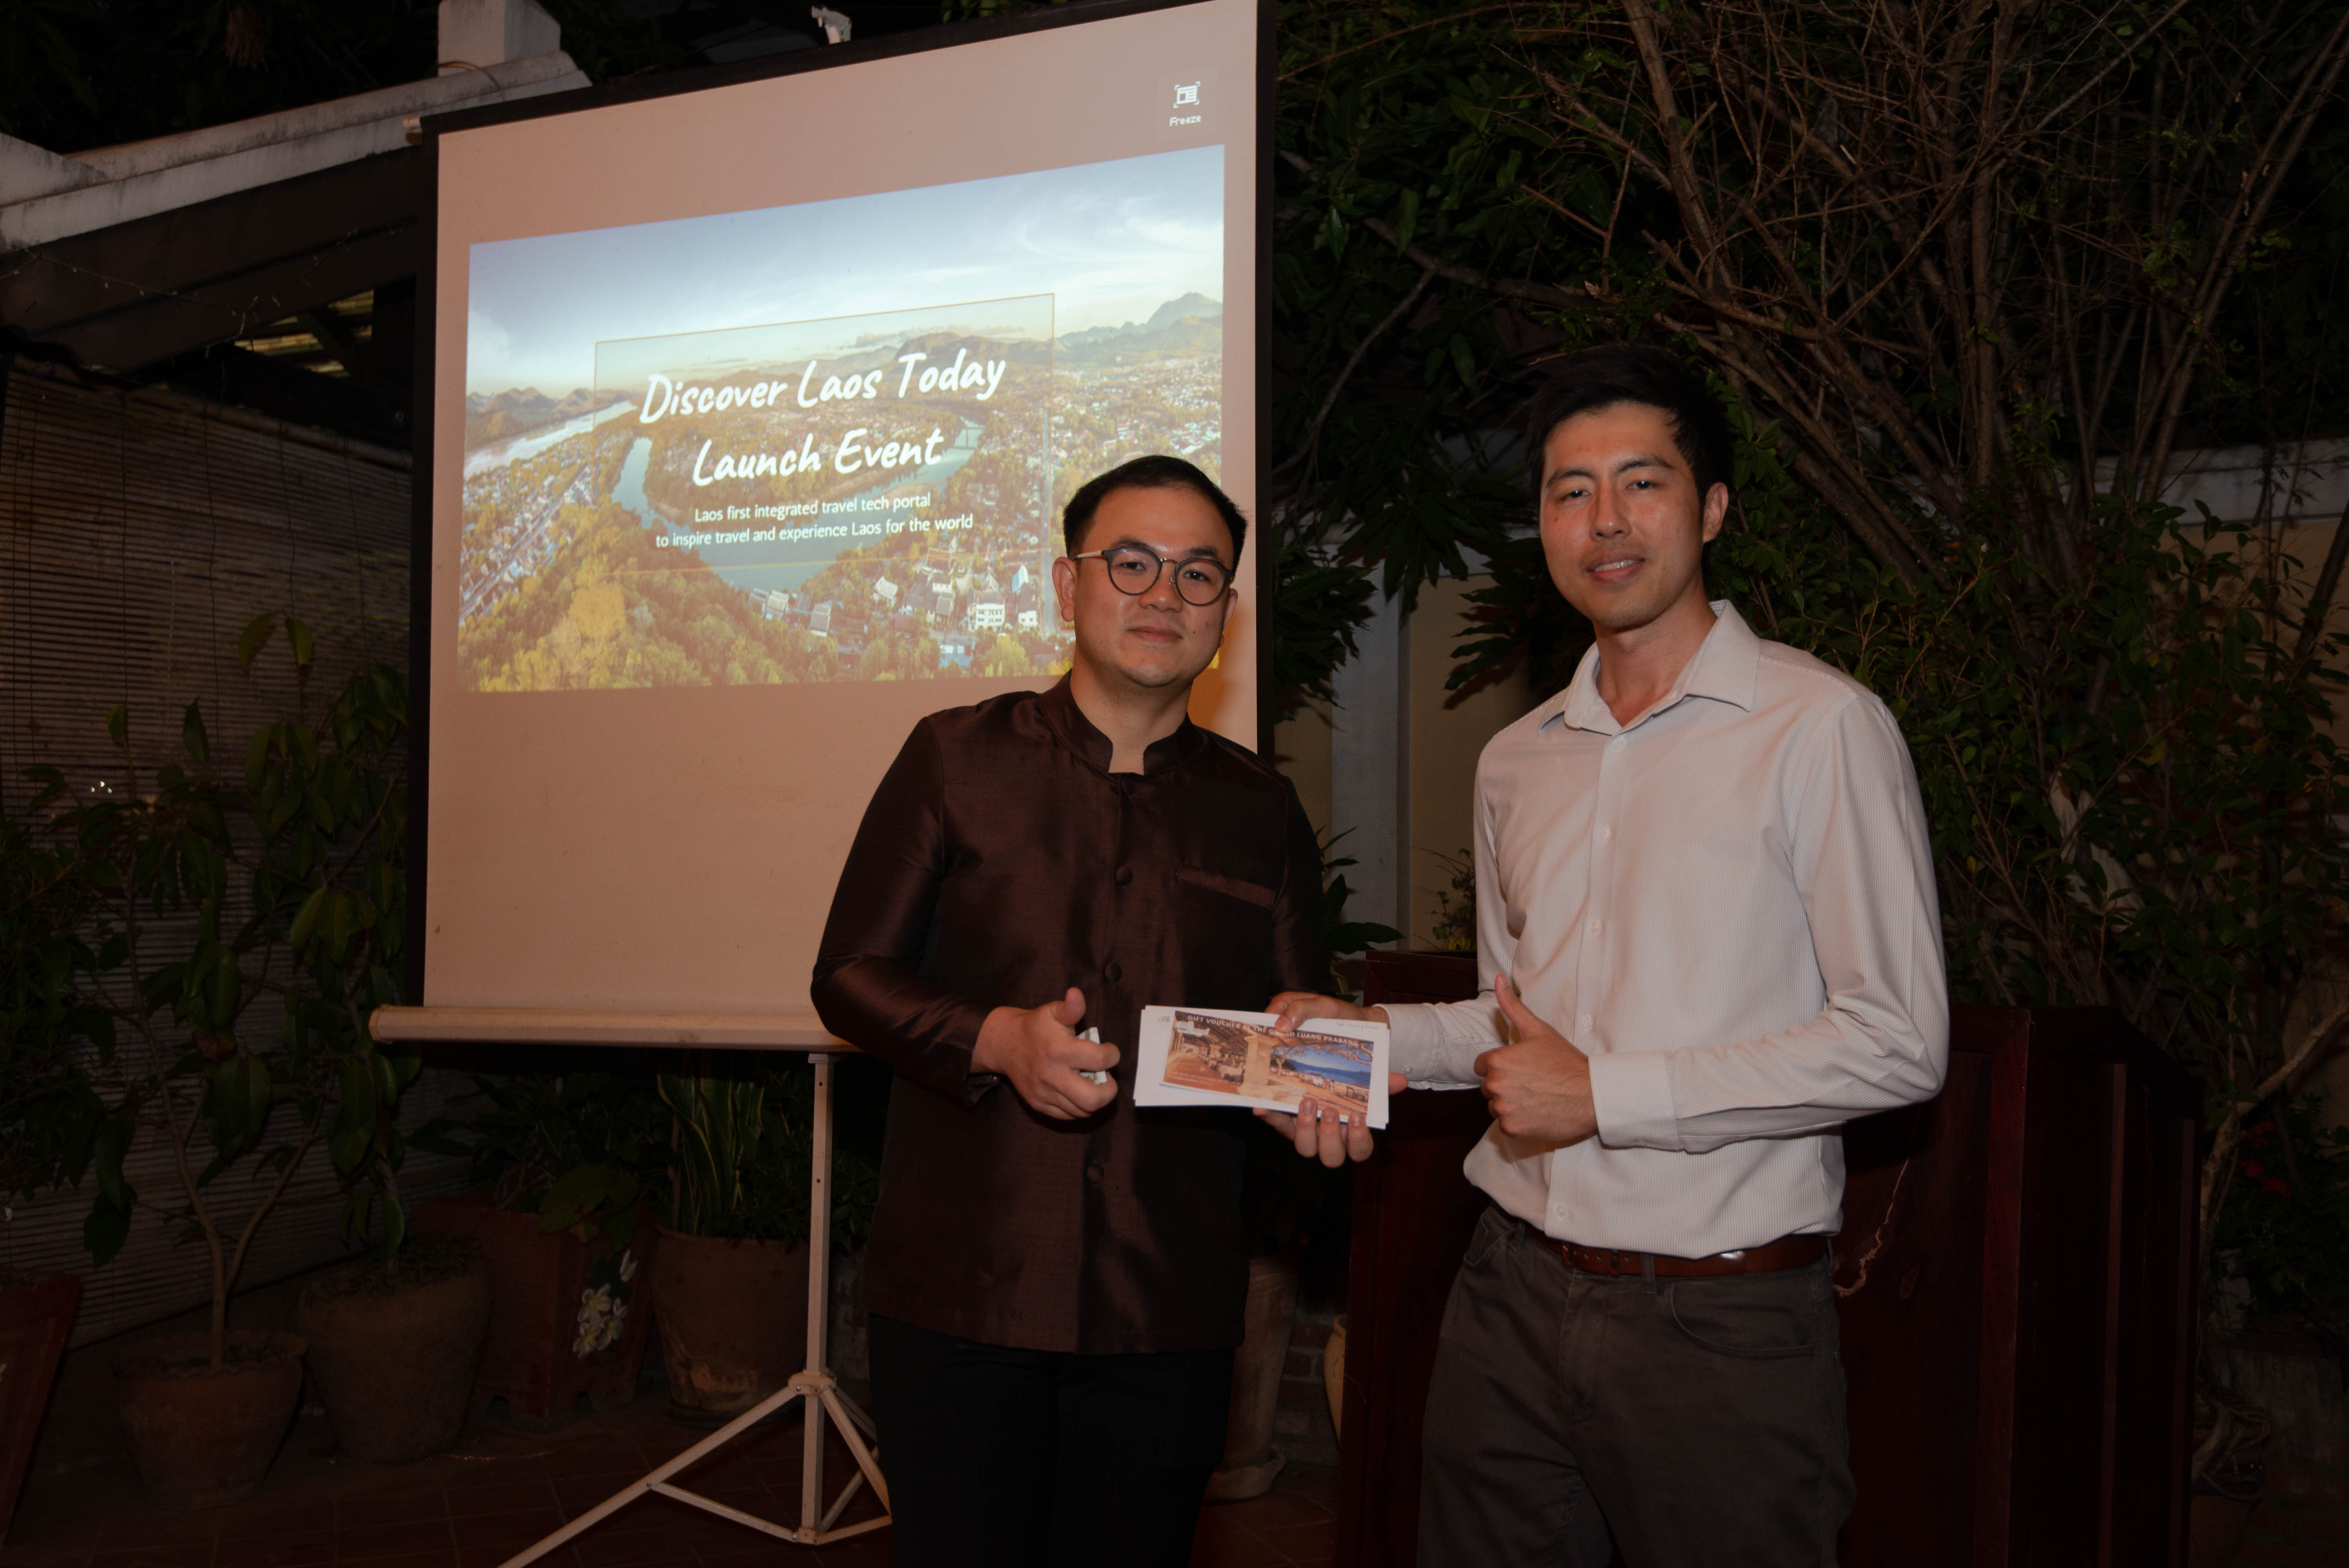 “发现老挝今日”在老挝旅游局的支持下正式开幕